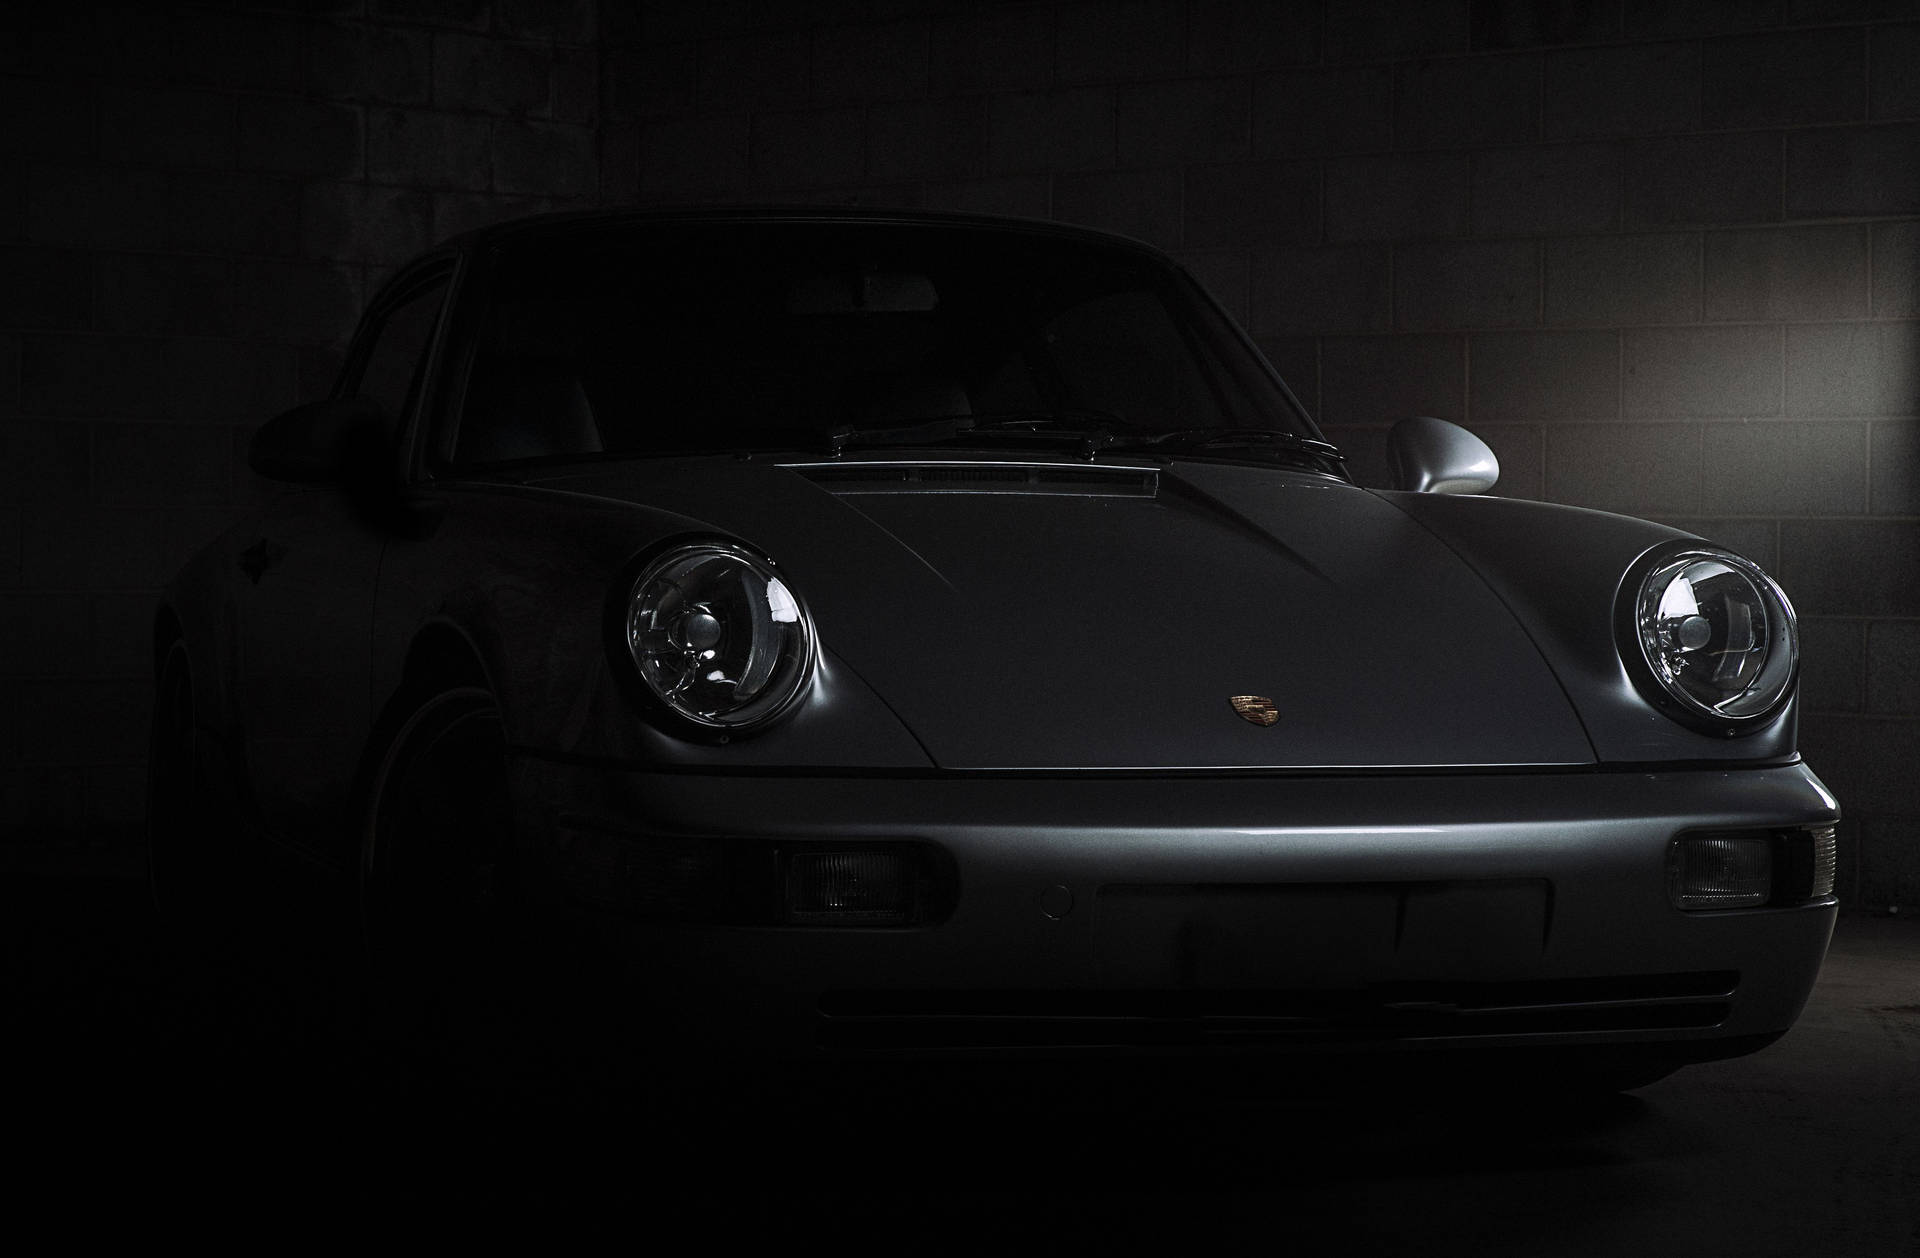 Porsche 911 In Matte Black Background